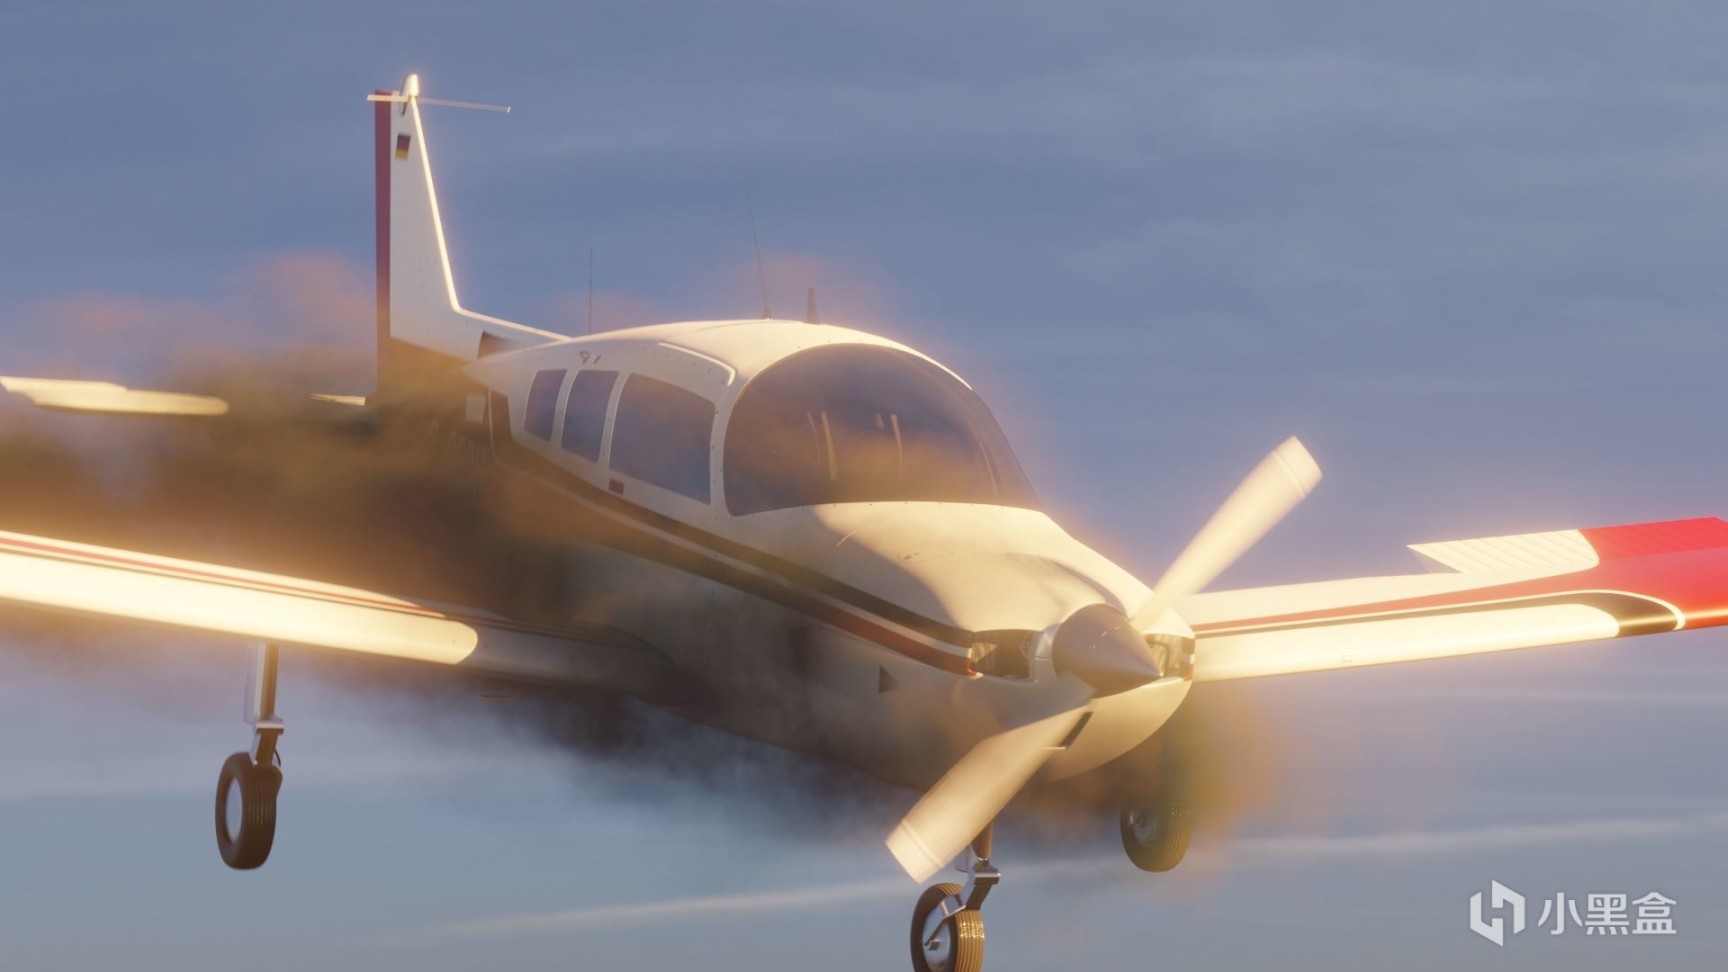 【PC遊戲】心跳遊戲HBG推出模擬遊戲新作《飛機失事模擬器》